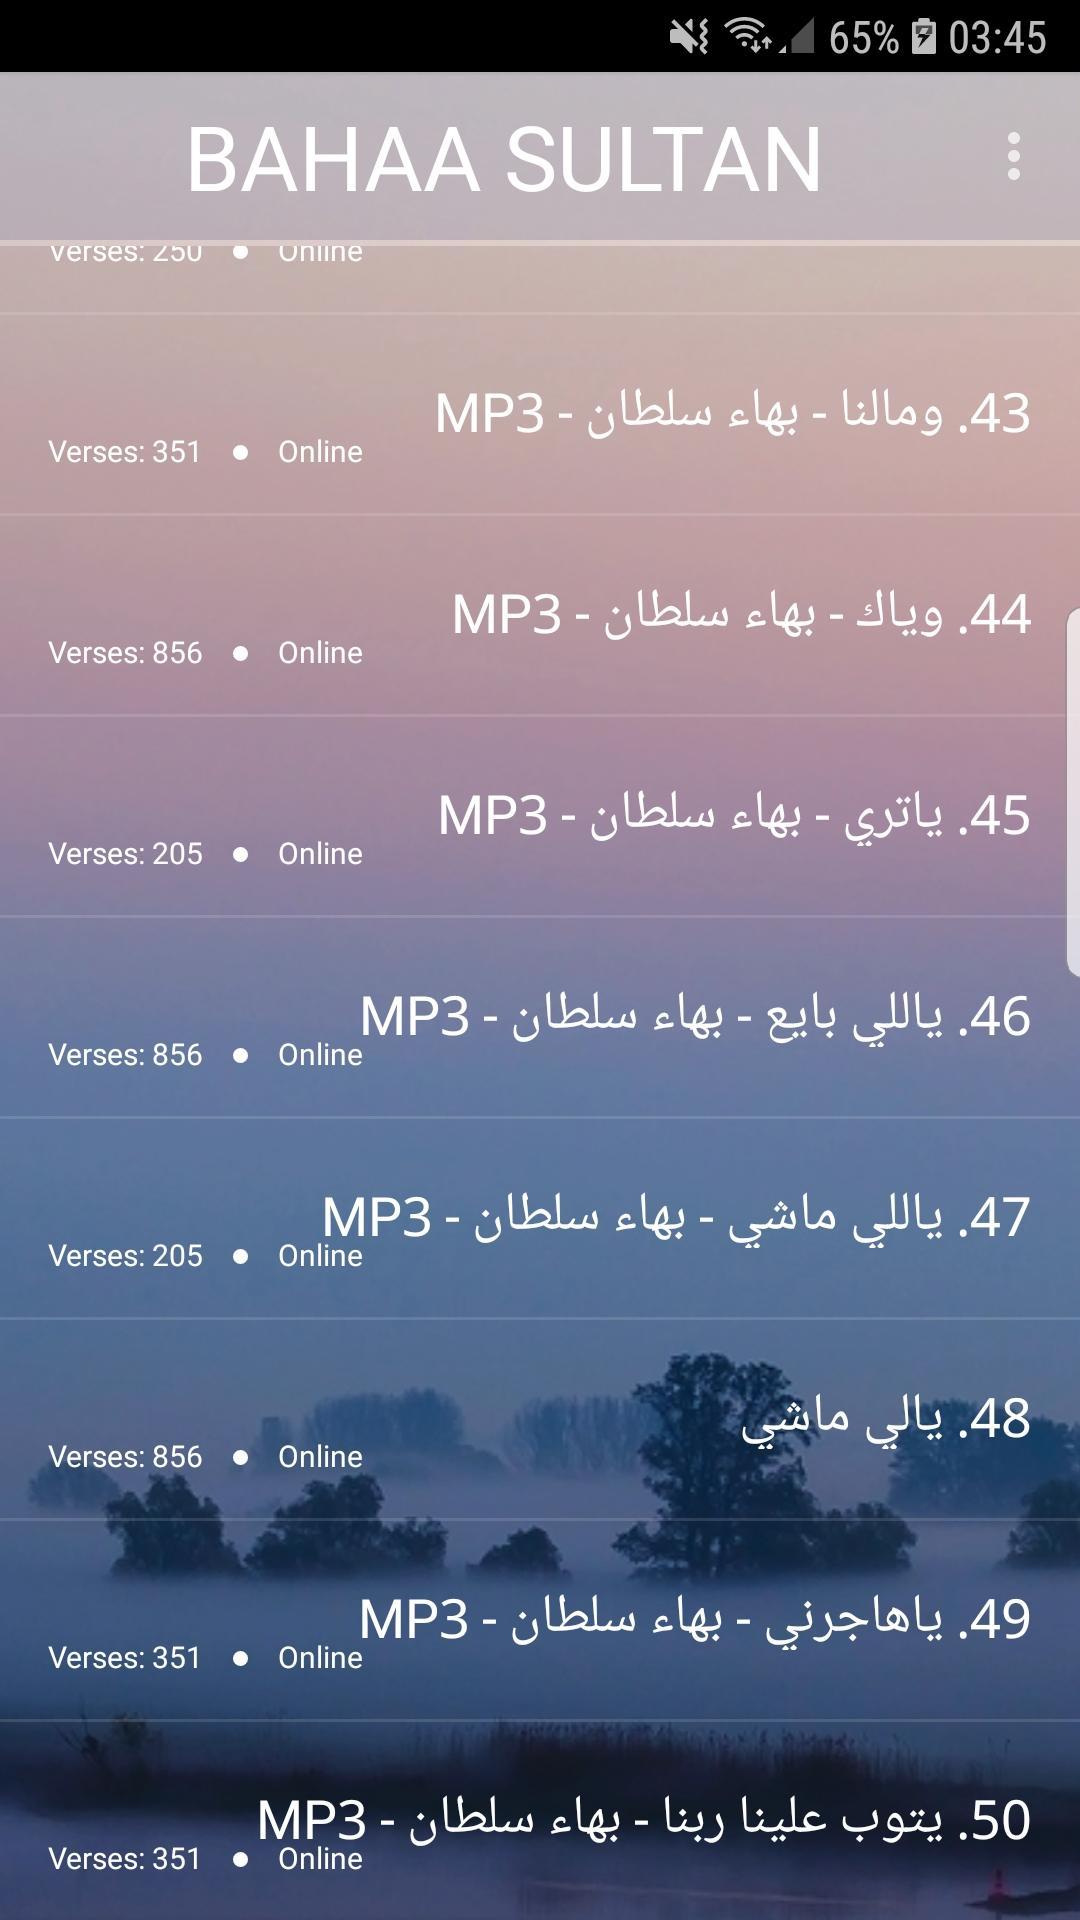 اغاني بهاء سلطان 2019-Aghani bahaa soltan ‎MP3 for Android - APK Download